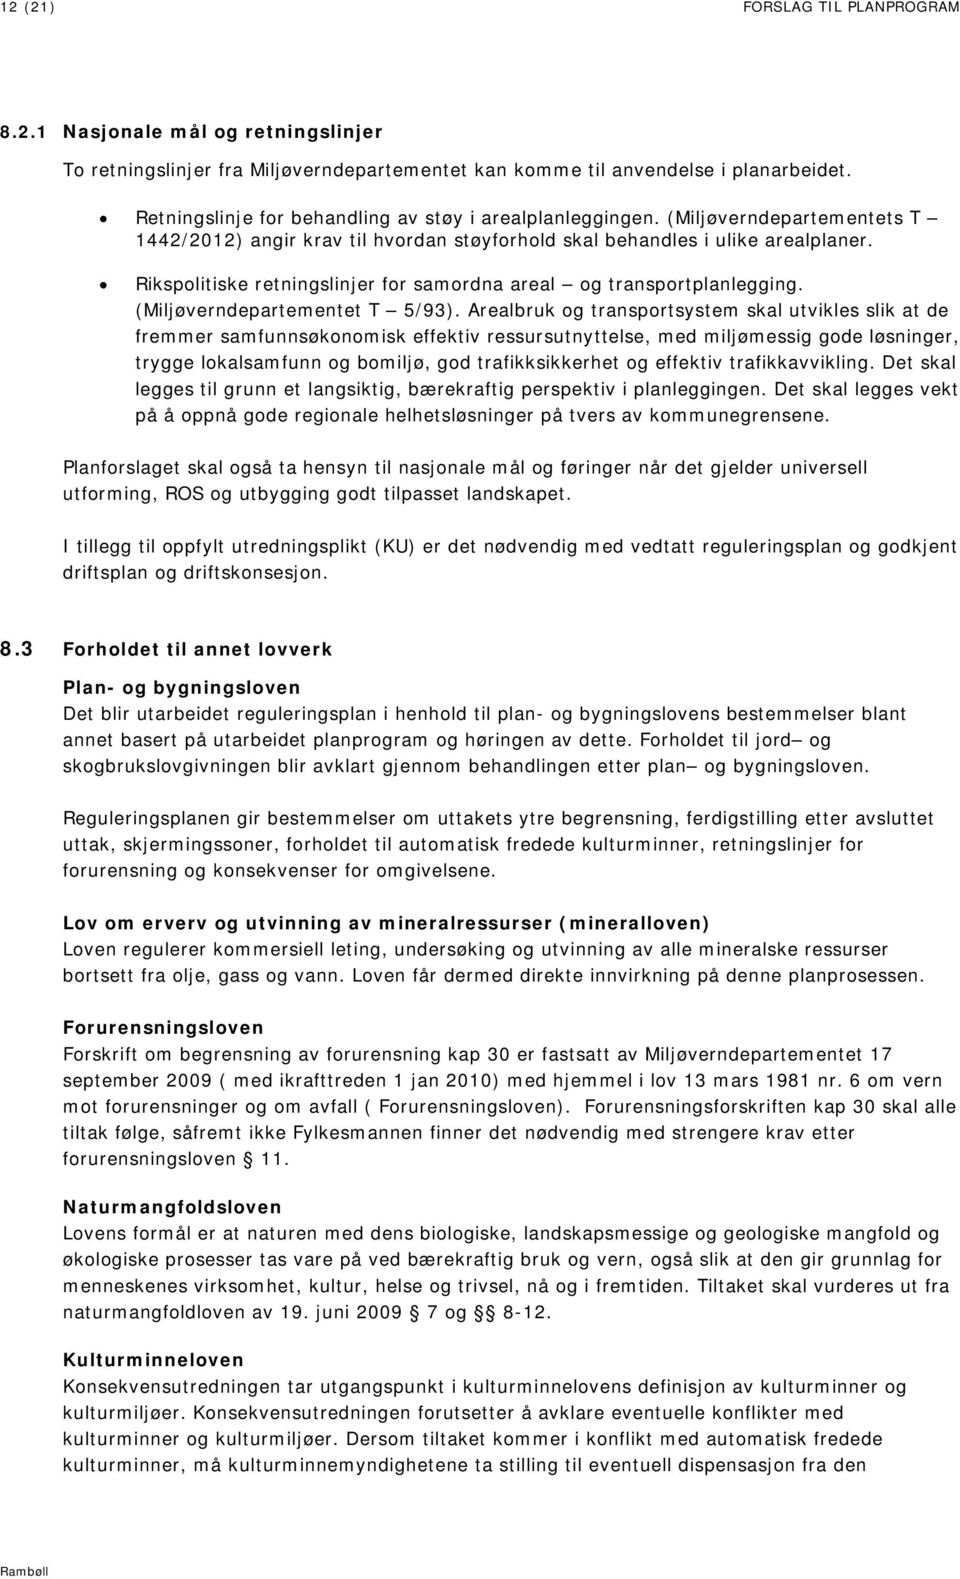 Rikspolitiske retningslinjer for samordna areal og transportplanlegging. (Miljøverndepartementet T 5/93).